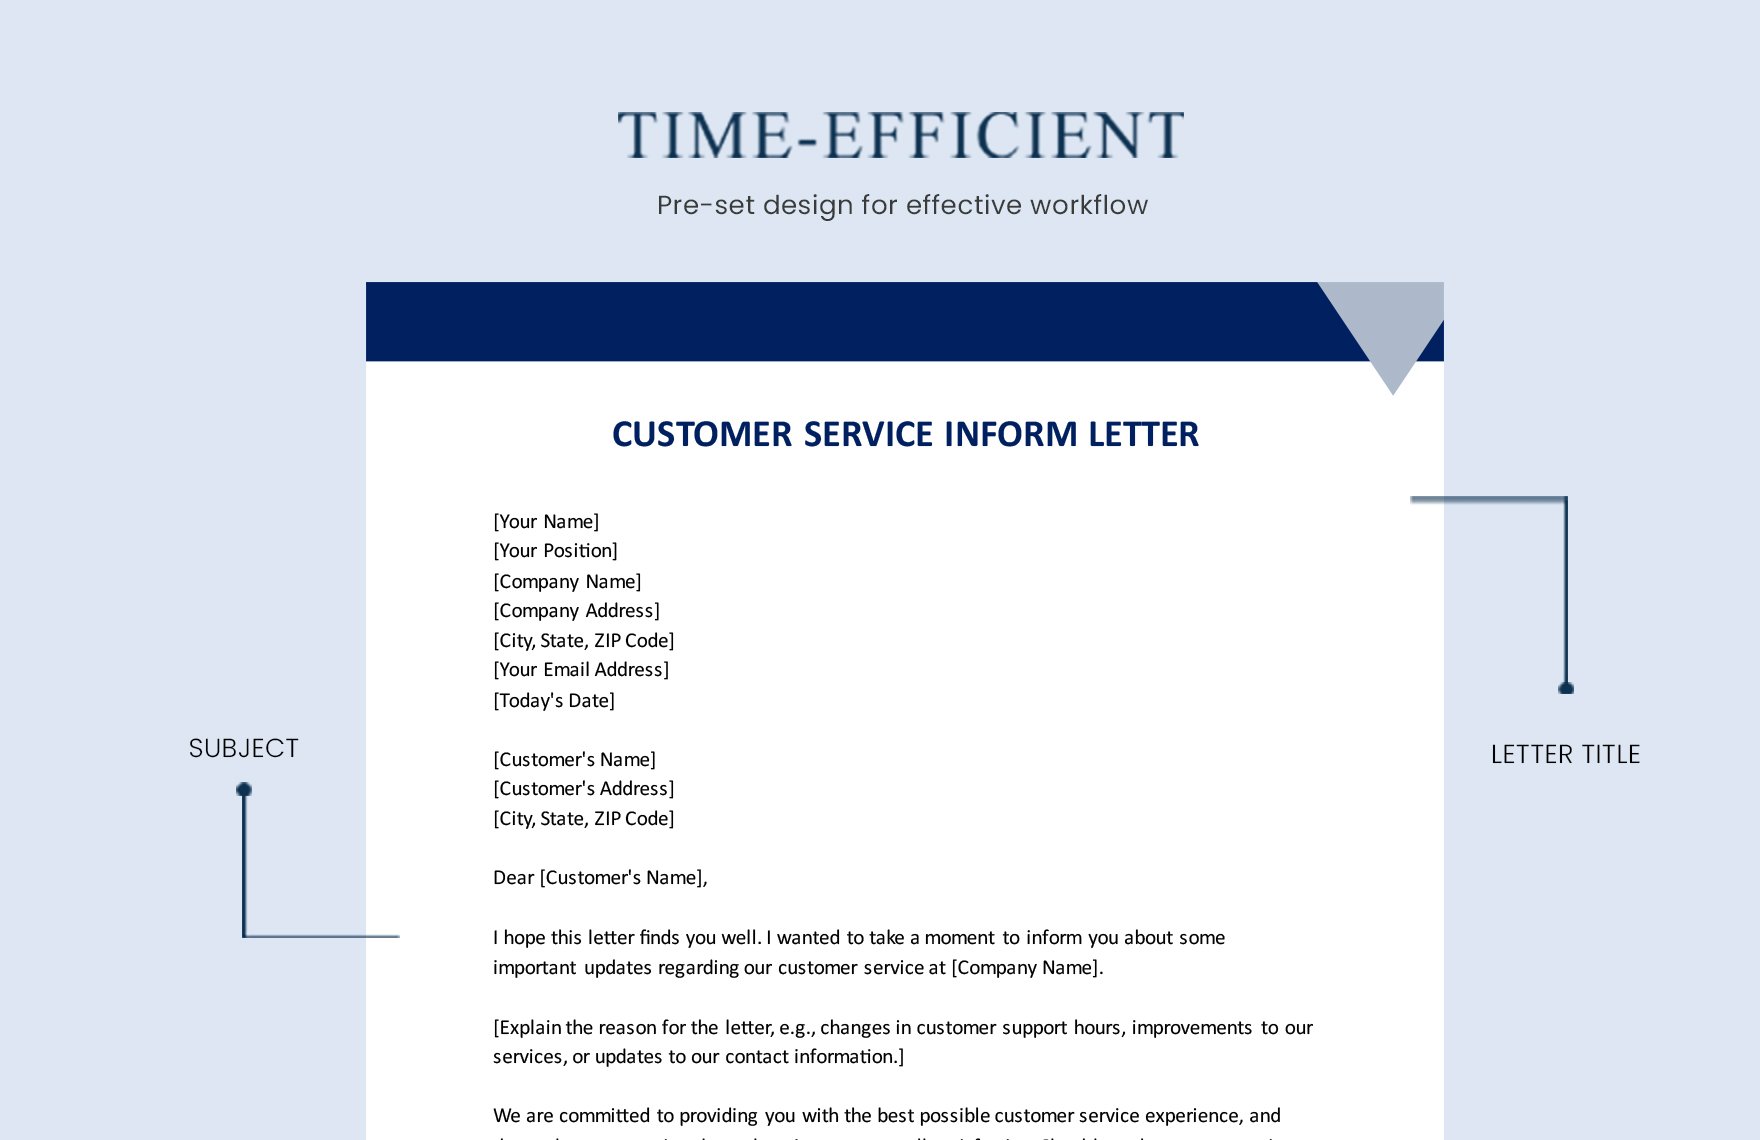 Customer Service Inform Letter